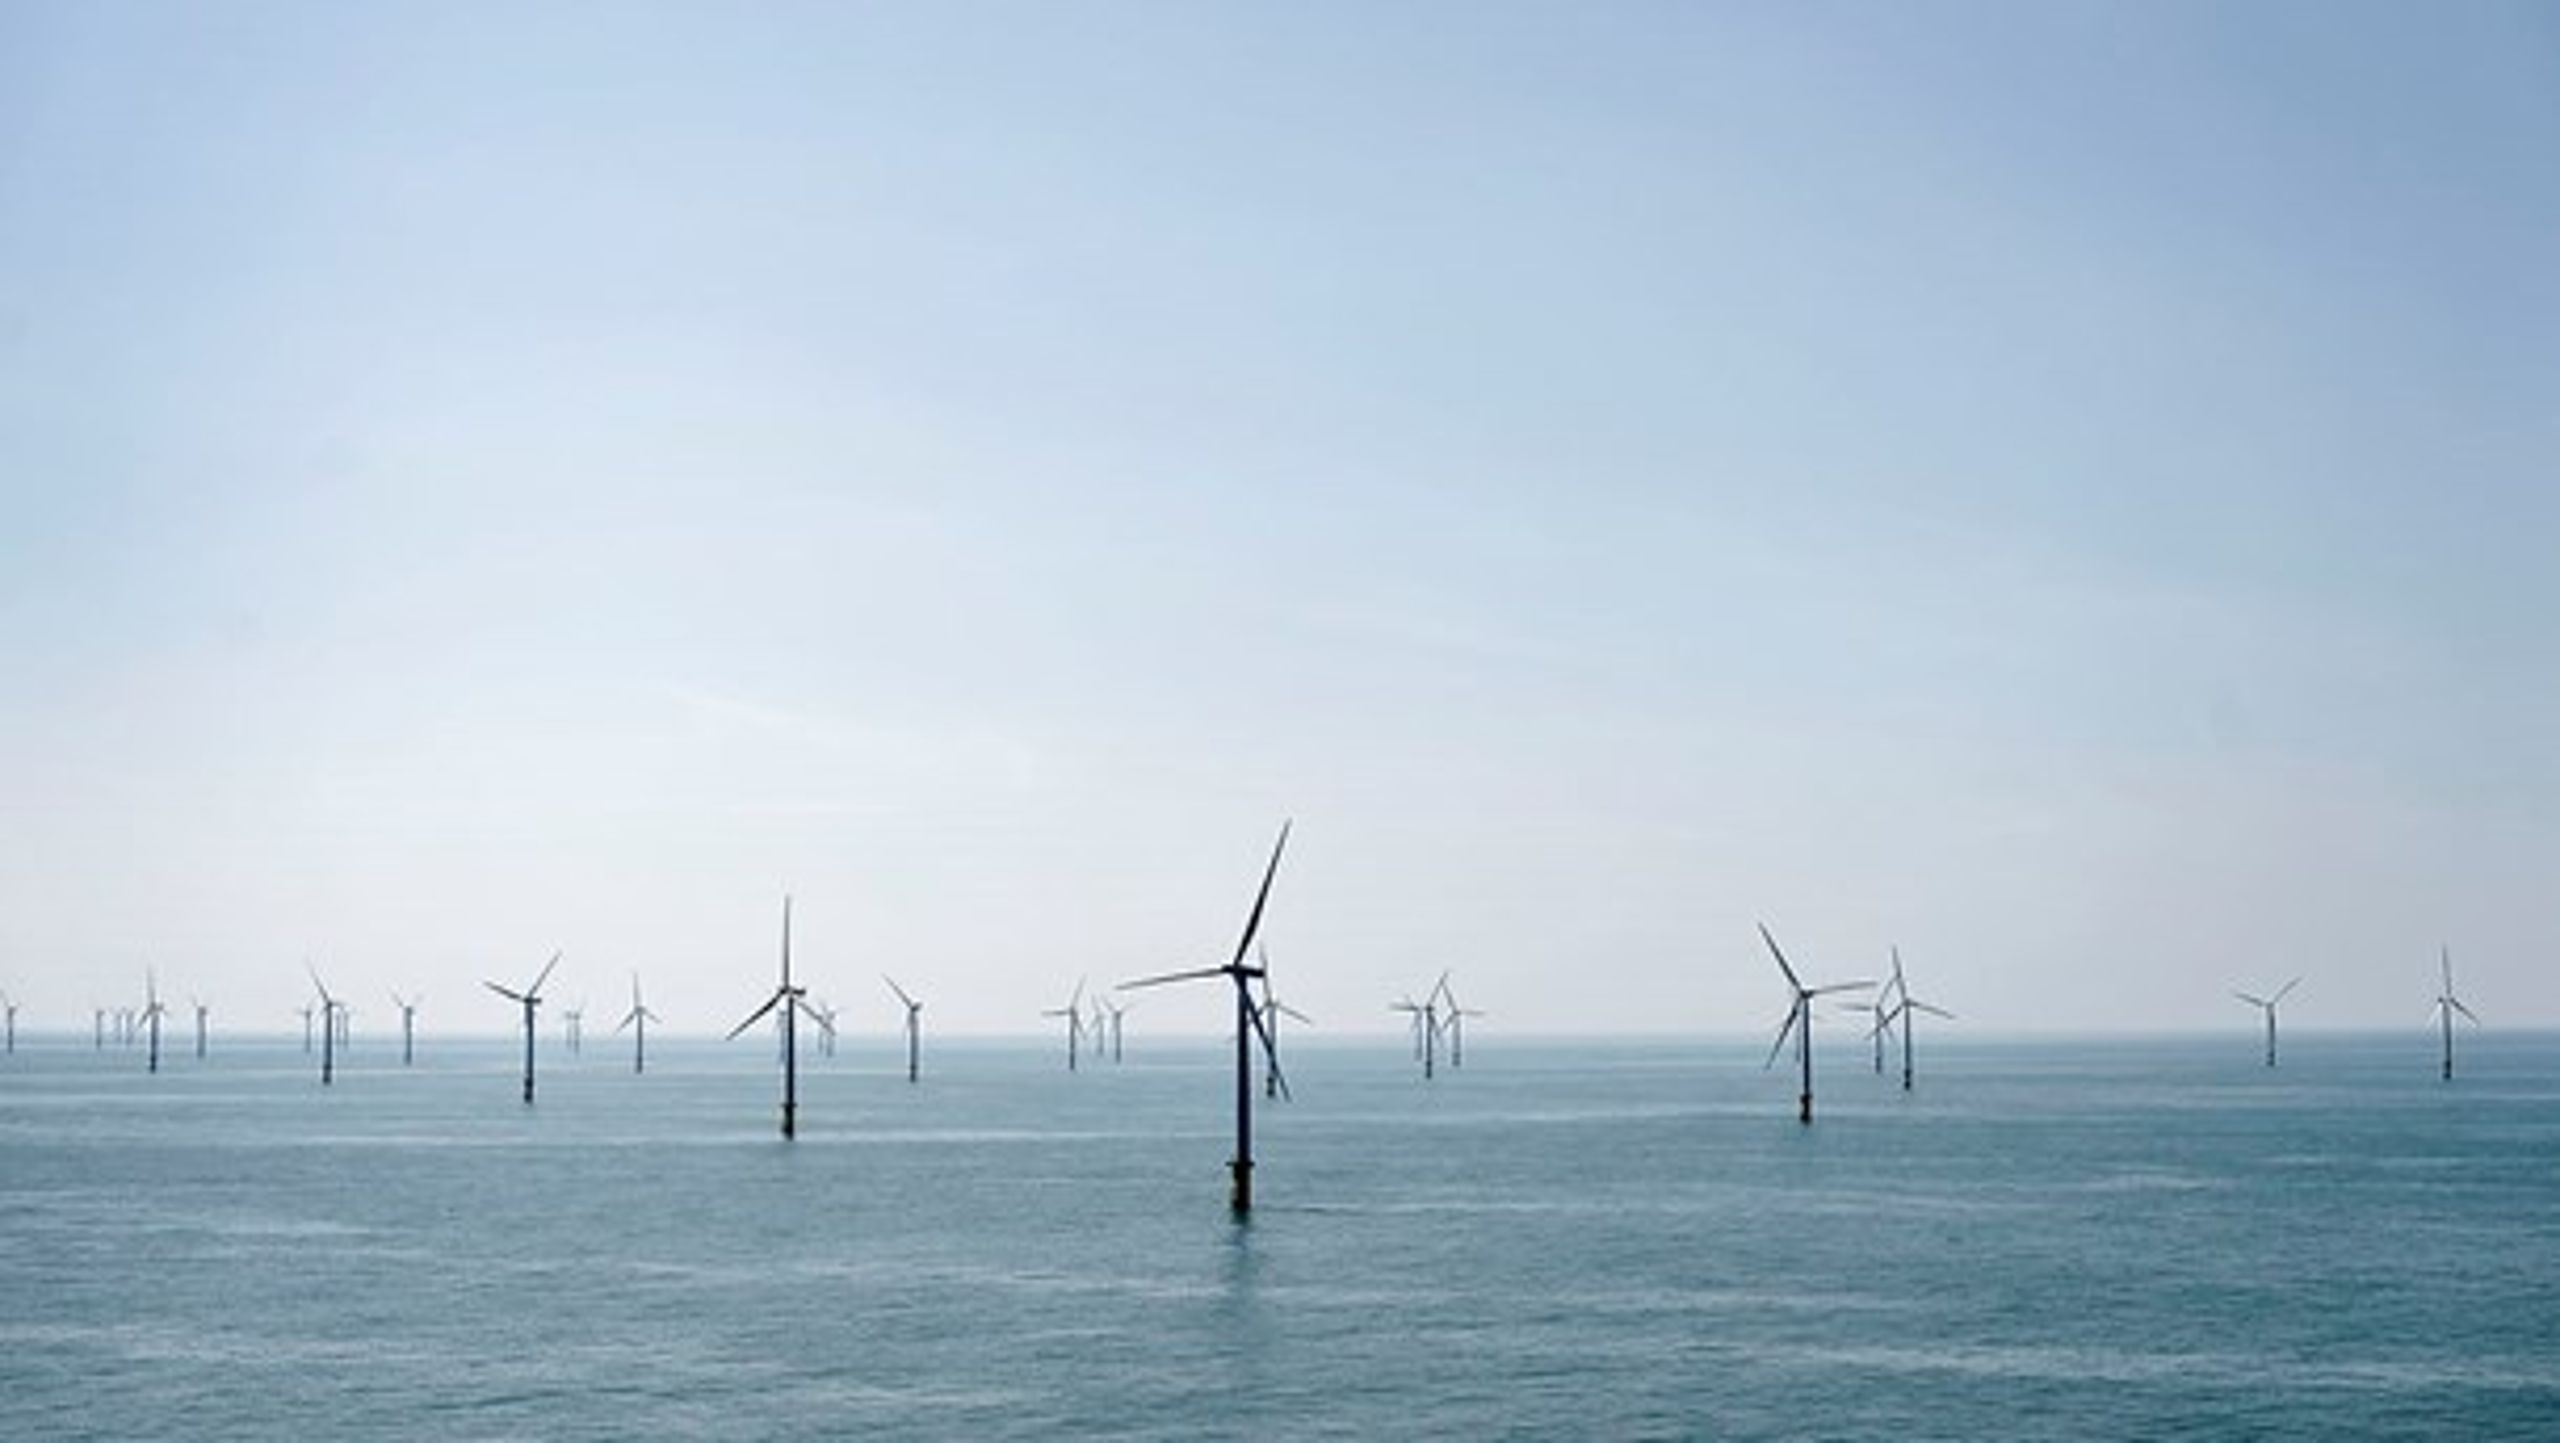 Det er planen, at de&nbsp;kystnære vindmølleparker skal opføres på den jyske vestkyst.&nbsp;